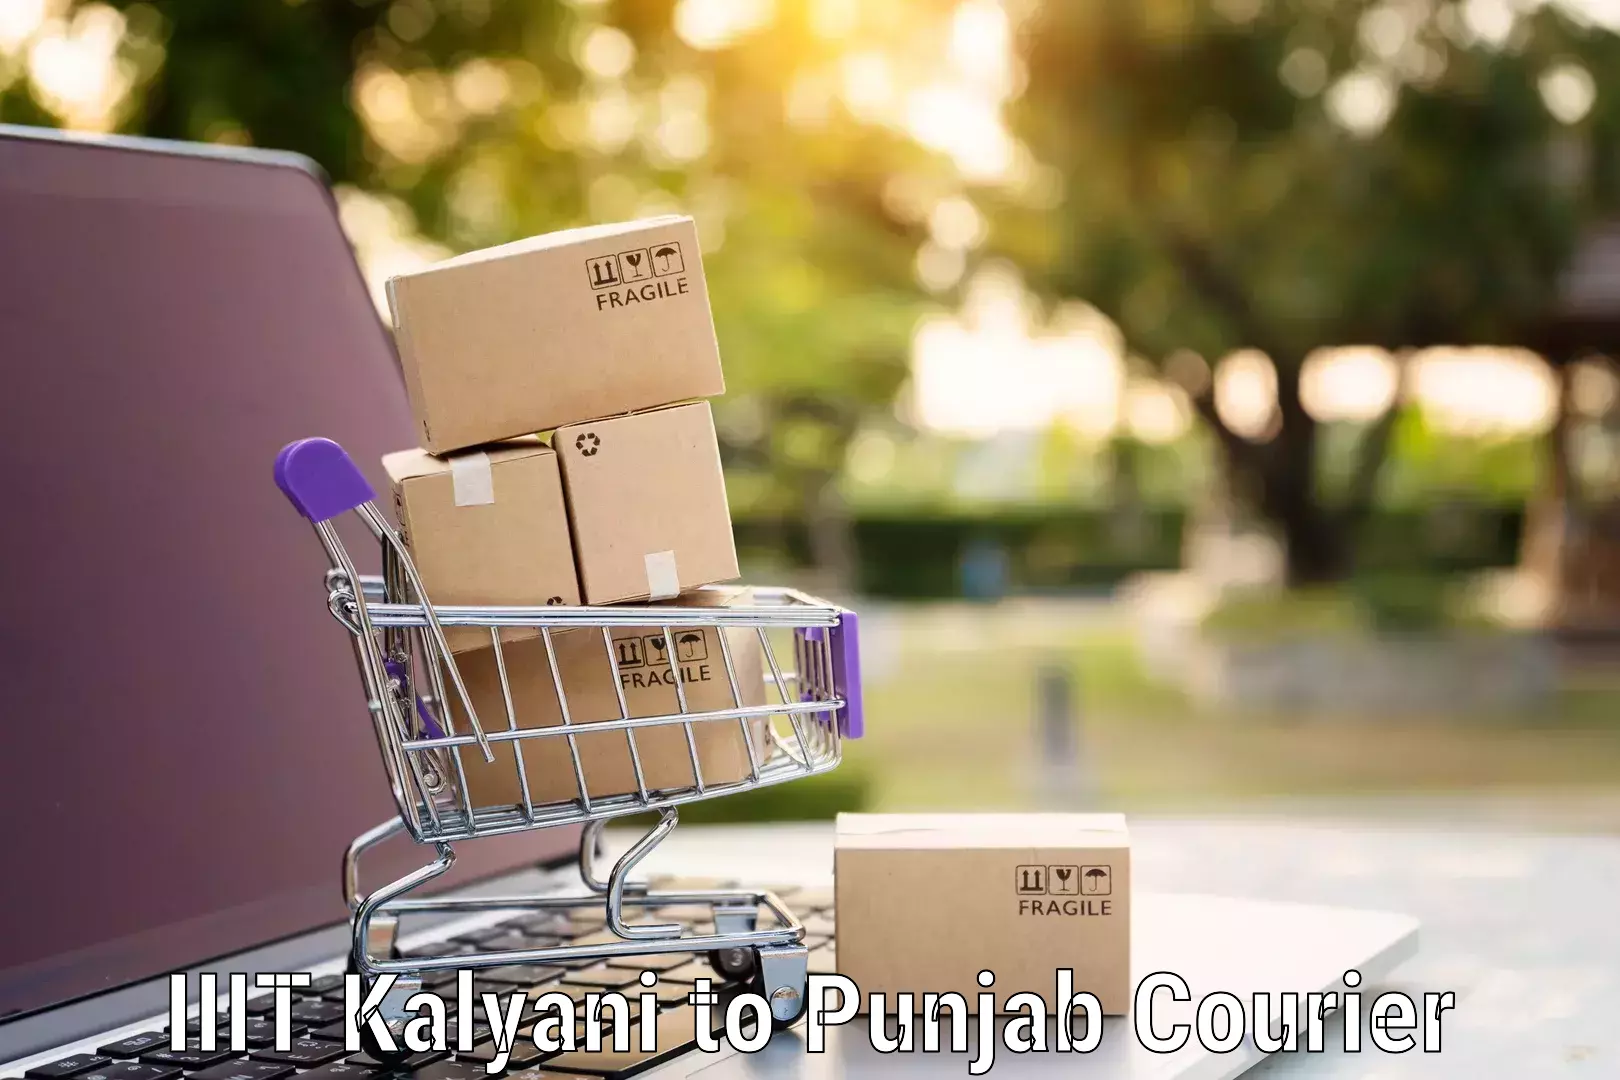 Specialized moving company IIIT Kalyani to Punjab